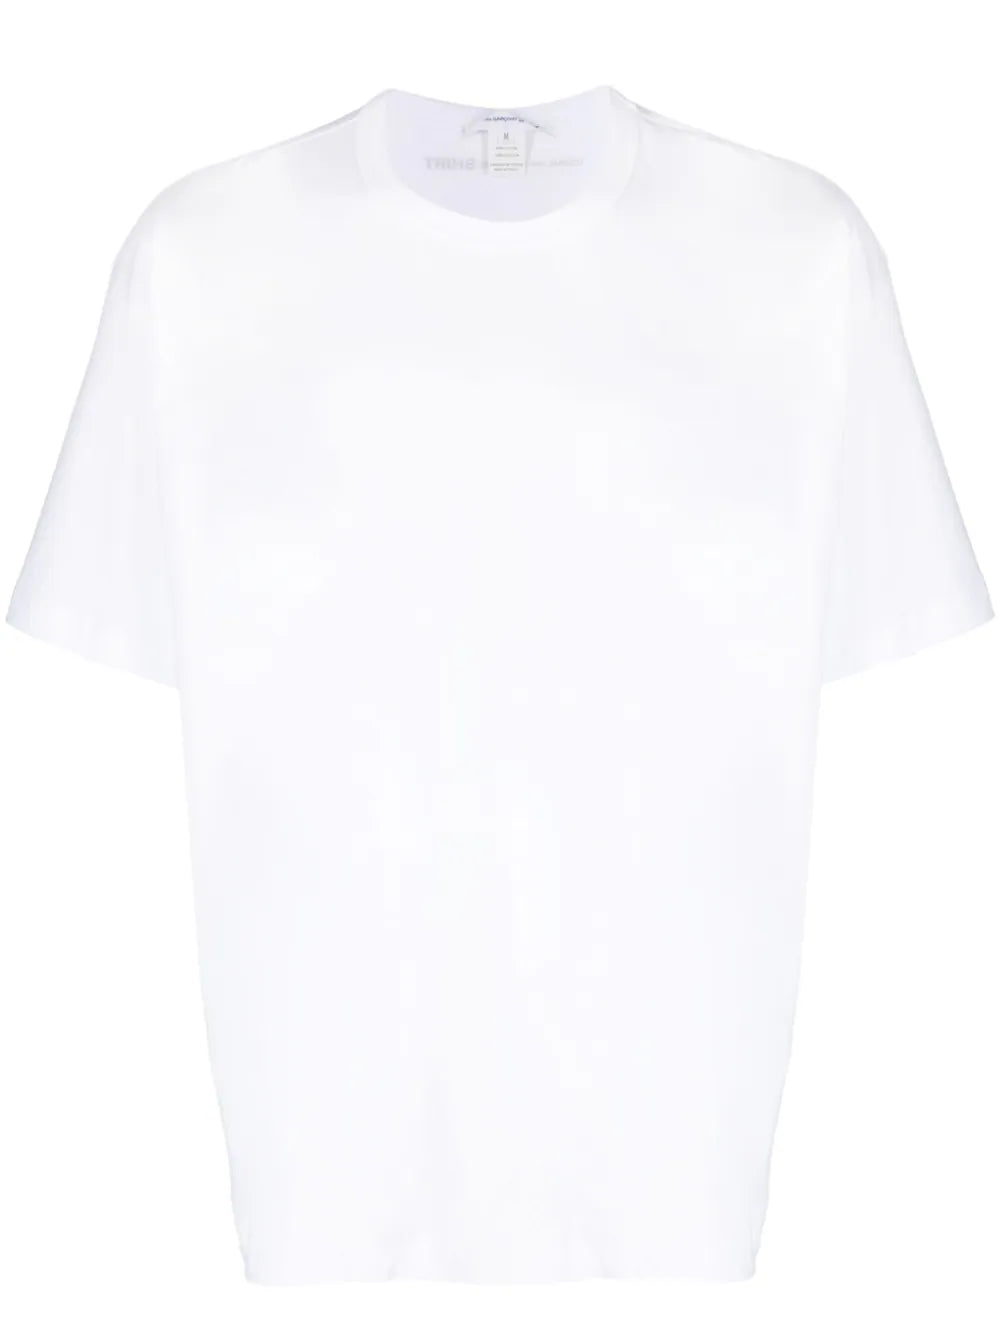 Comme Des Garcons Shirt White Cotton T-Shirt